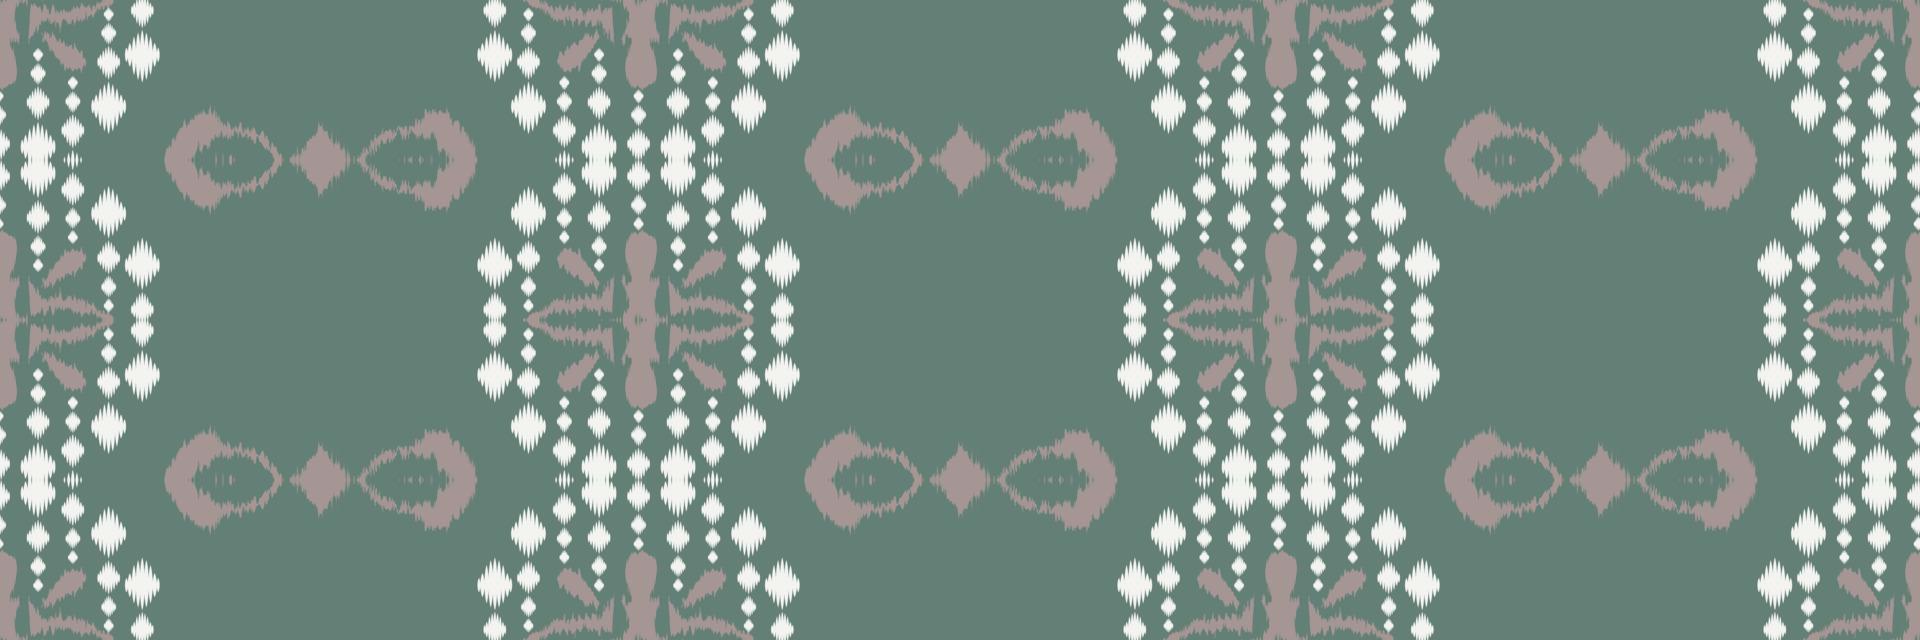 batik textil- ikat grafik sömlös mönster digital vektor design för skriva ut saree kurti borneo tyg gräns borsta symboler färgrutor eleganta